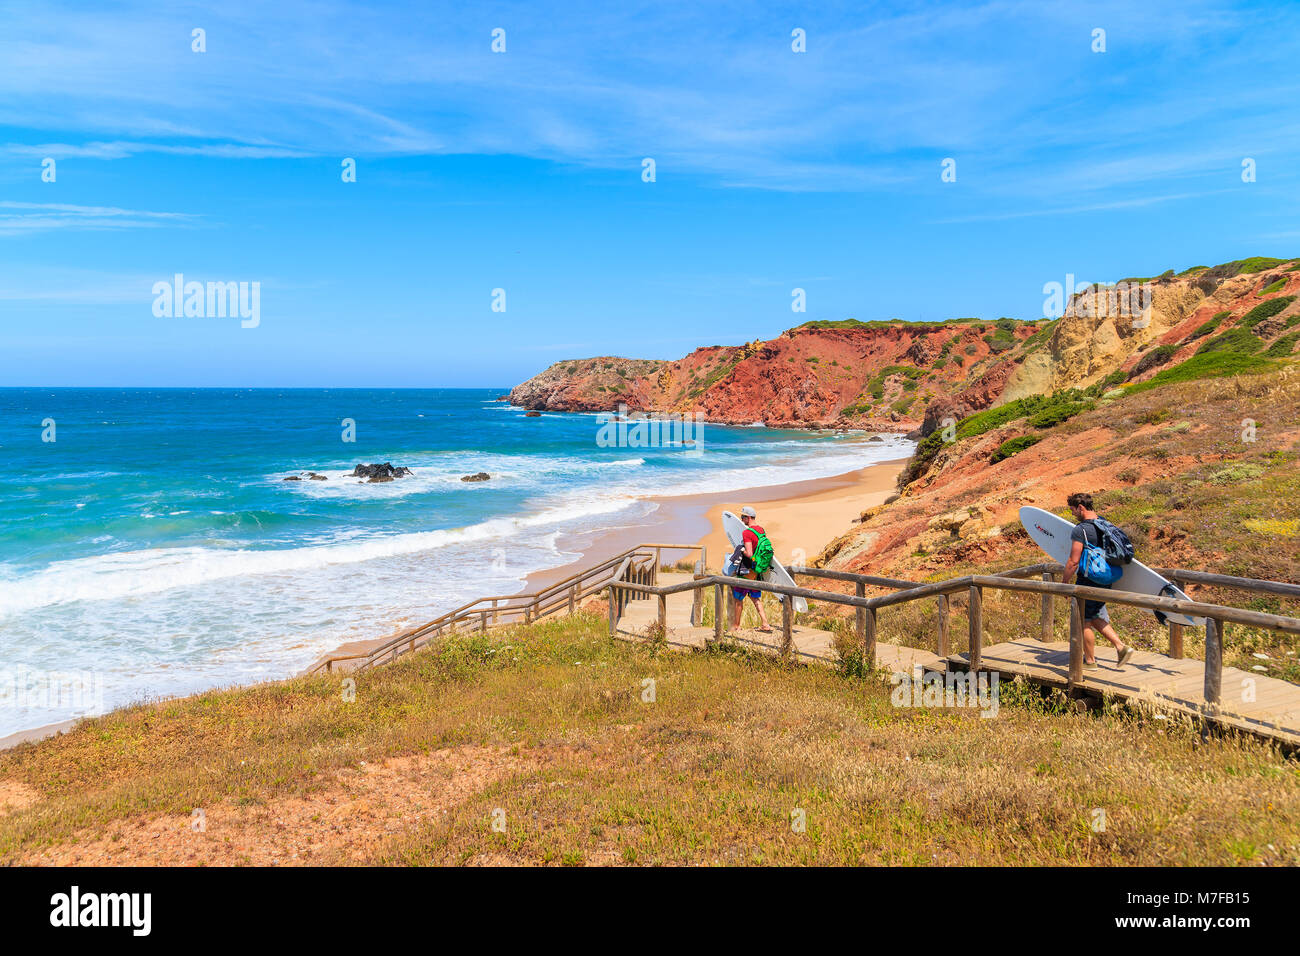 PRAIA DO AMADO STRAND, PORTUGAL - 15. MAI 2015: Surfer mit Brettern zu Fuß zum Strand an sonnigen schönen Tag. Wassersport sind beliebte Aktivität in diesem Stockfoto